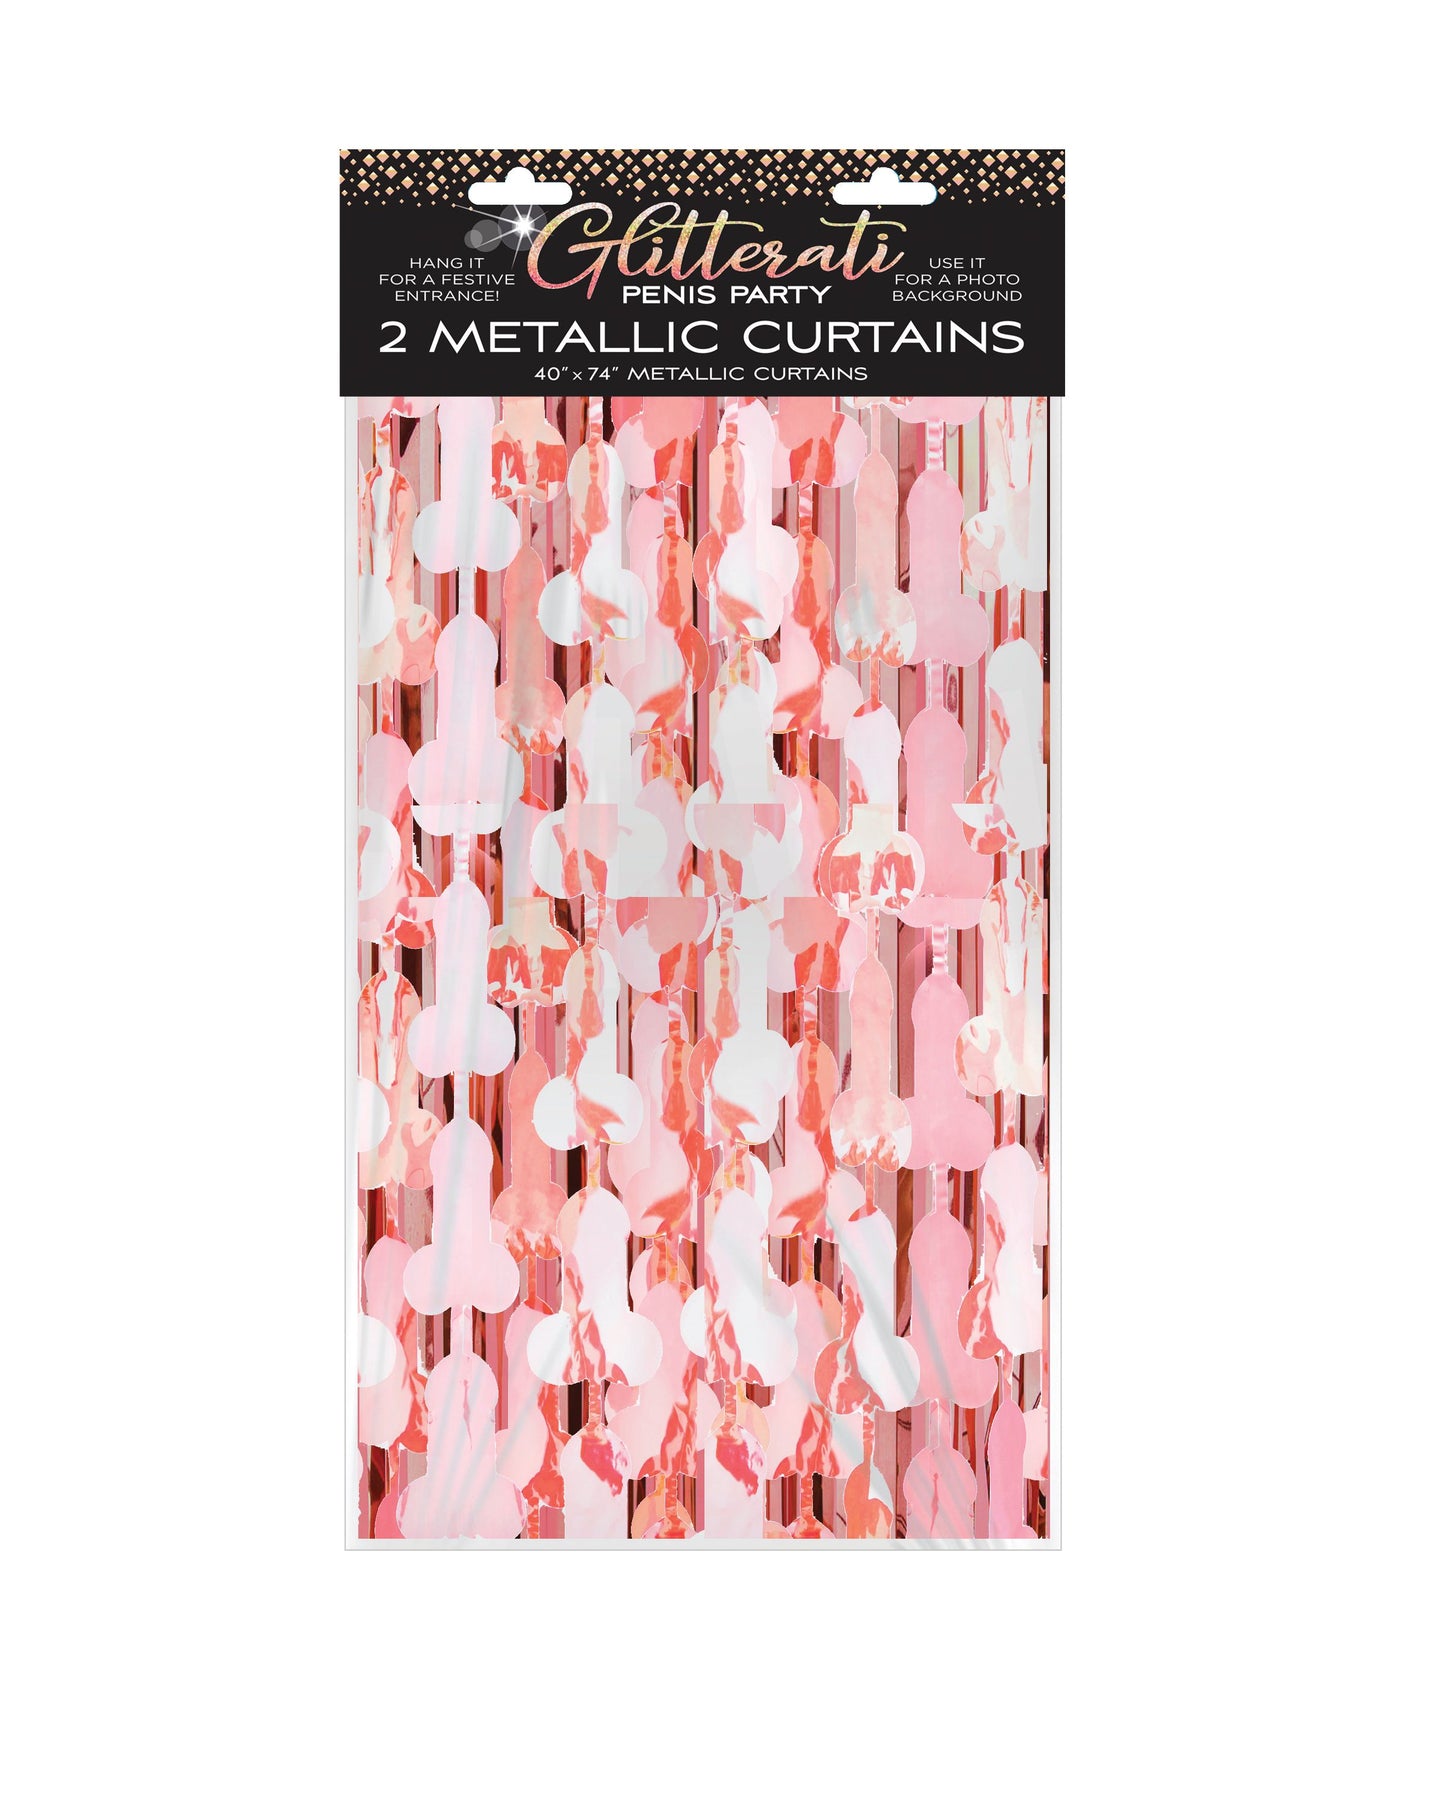 Glitterati Penis Foil Curtains